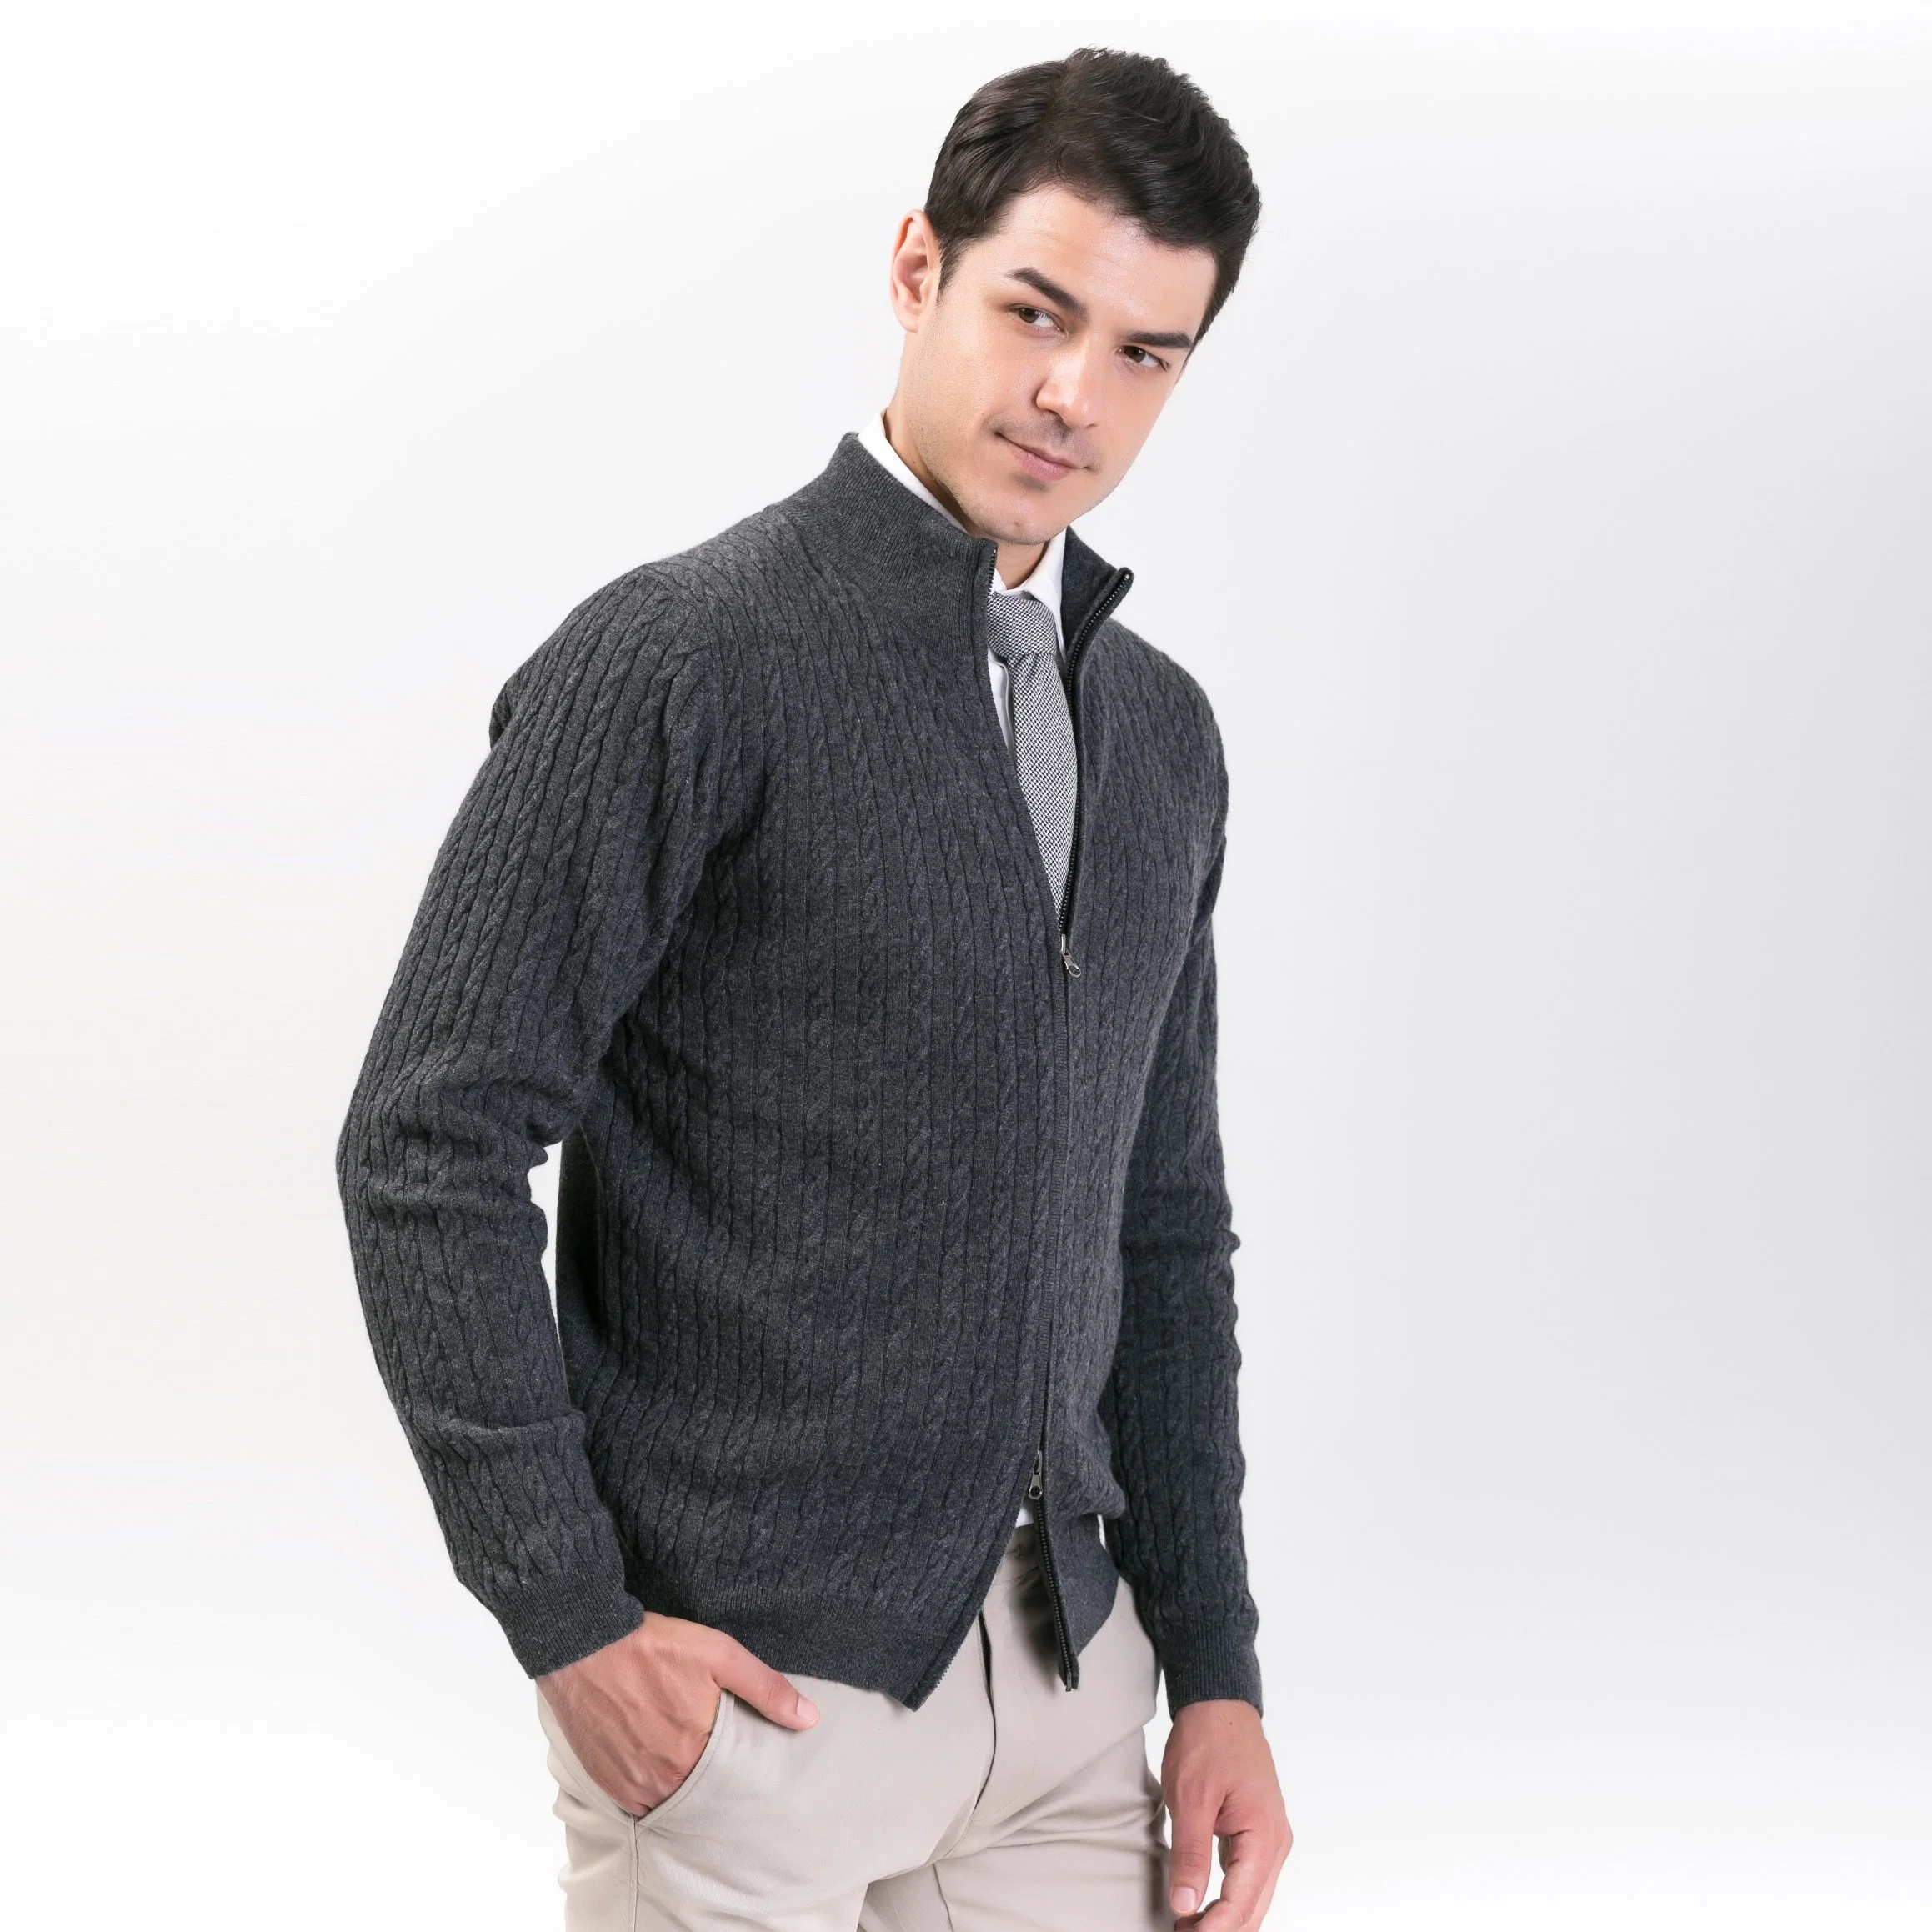 Moda masculina: suéter de cardigan de lana y cachemira con doble cierre de cremallera.